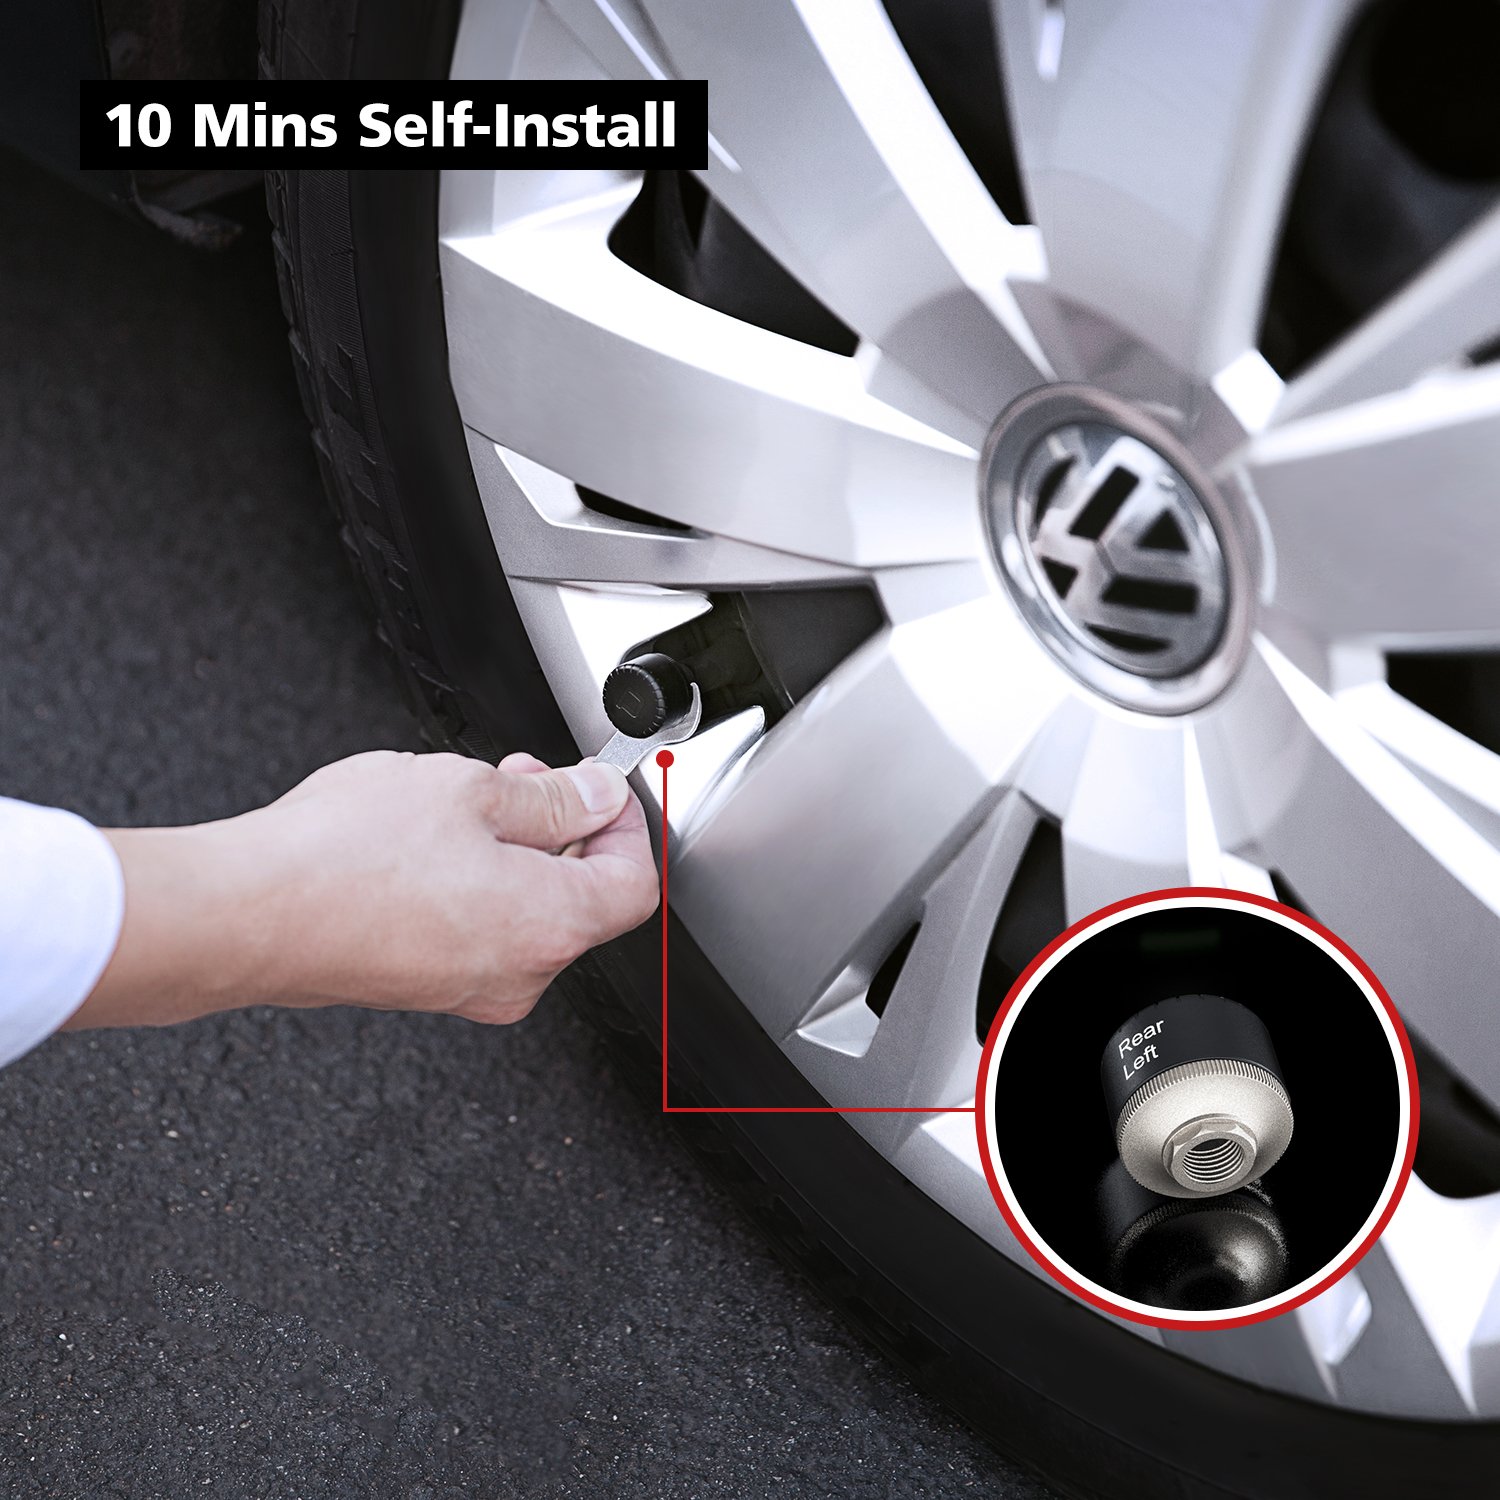 nonda ZUS AccurateTemp Smart Tire Safety Monitor